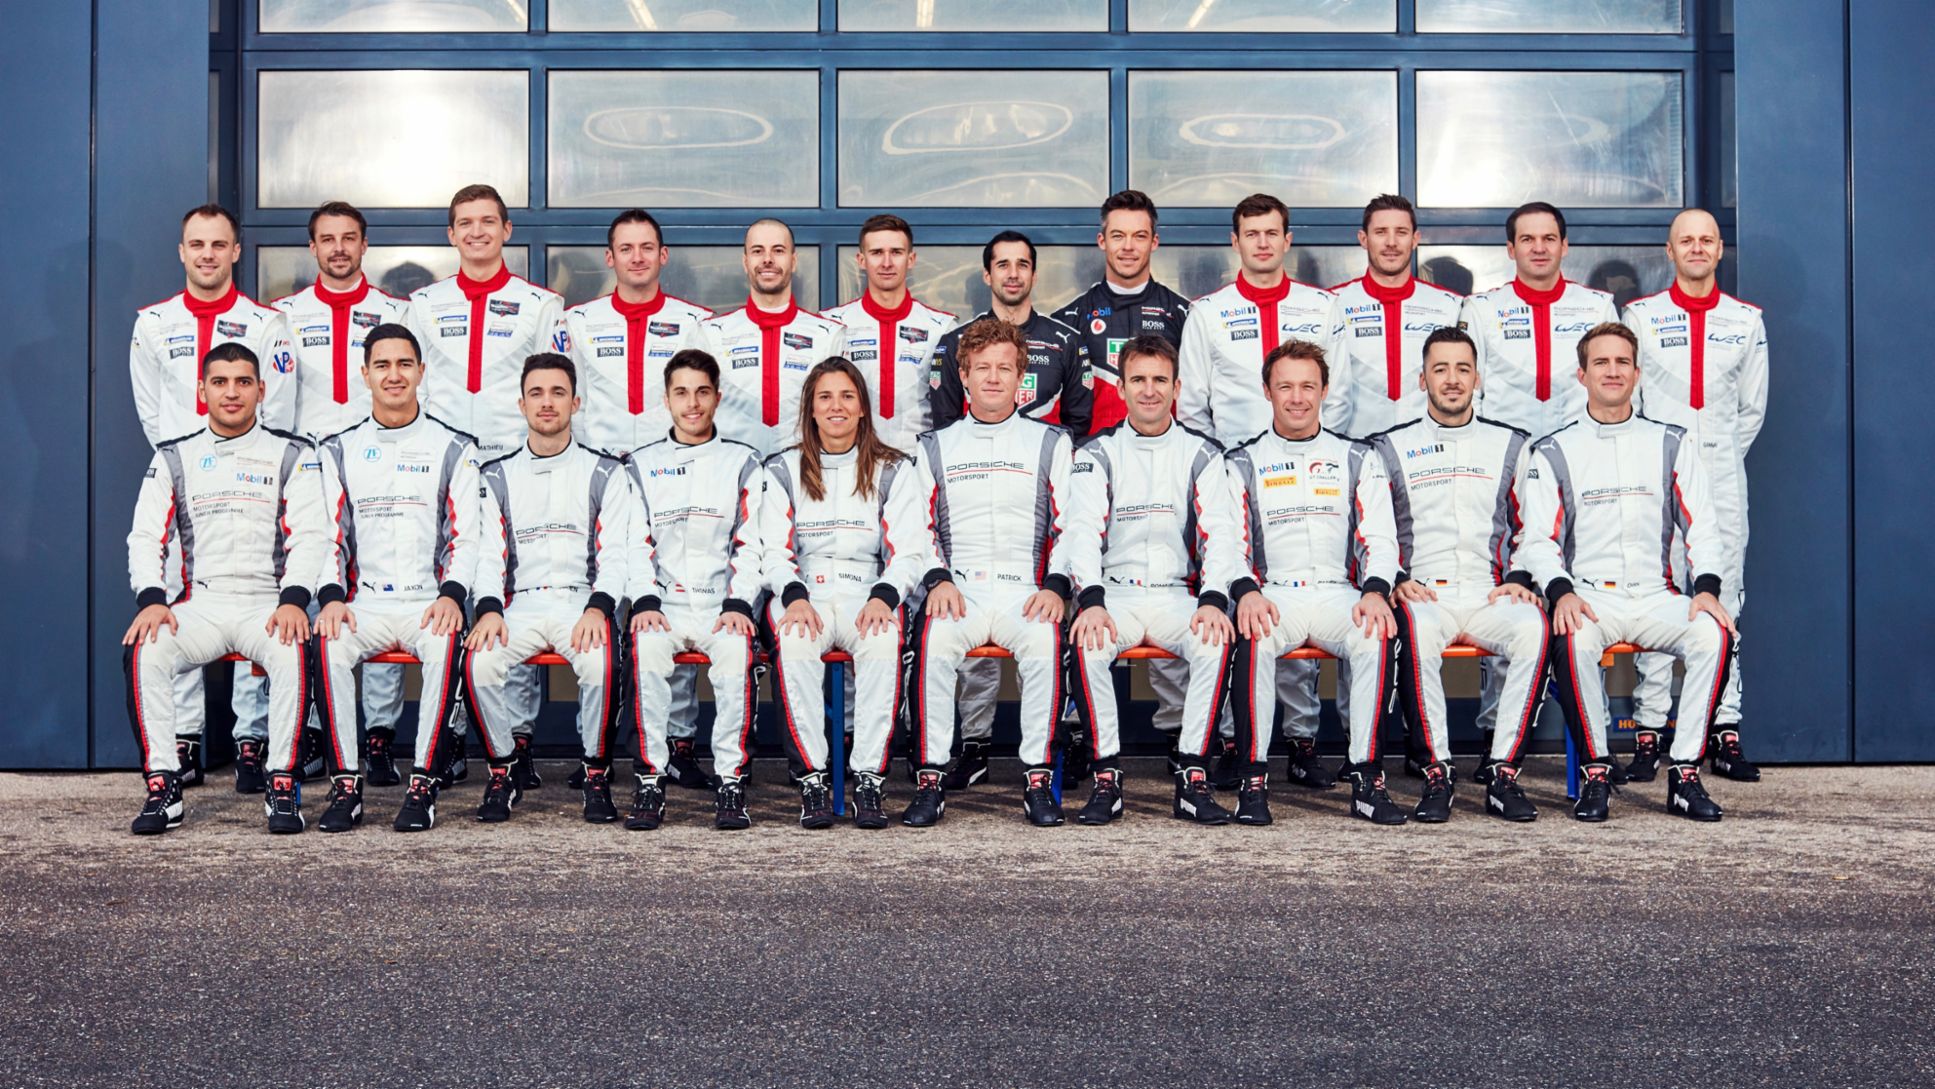 Equipo oficial de pilotos Porsche para la temporada 2020, 2019, Porsche AG